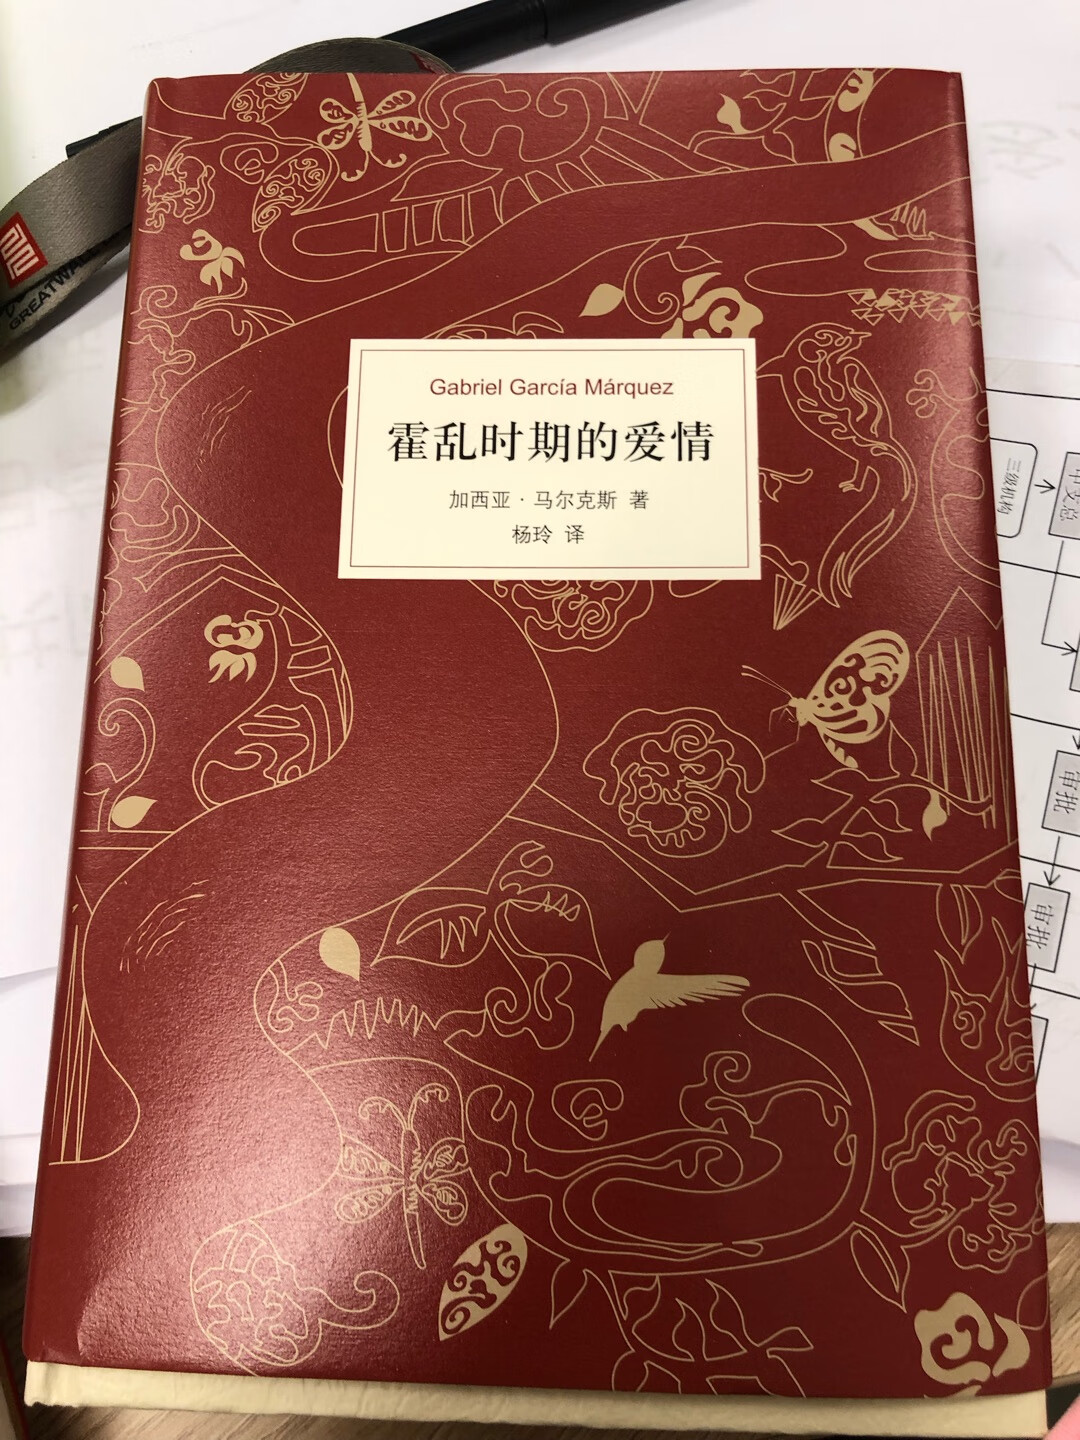 伟大的作品！杨玲的译本，更容易读懂。